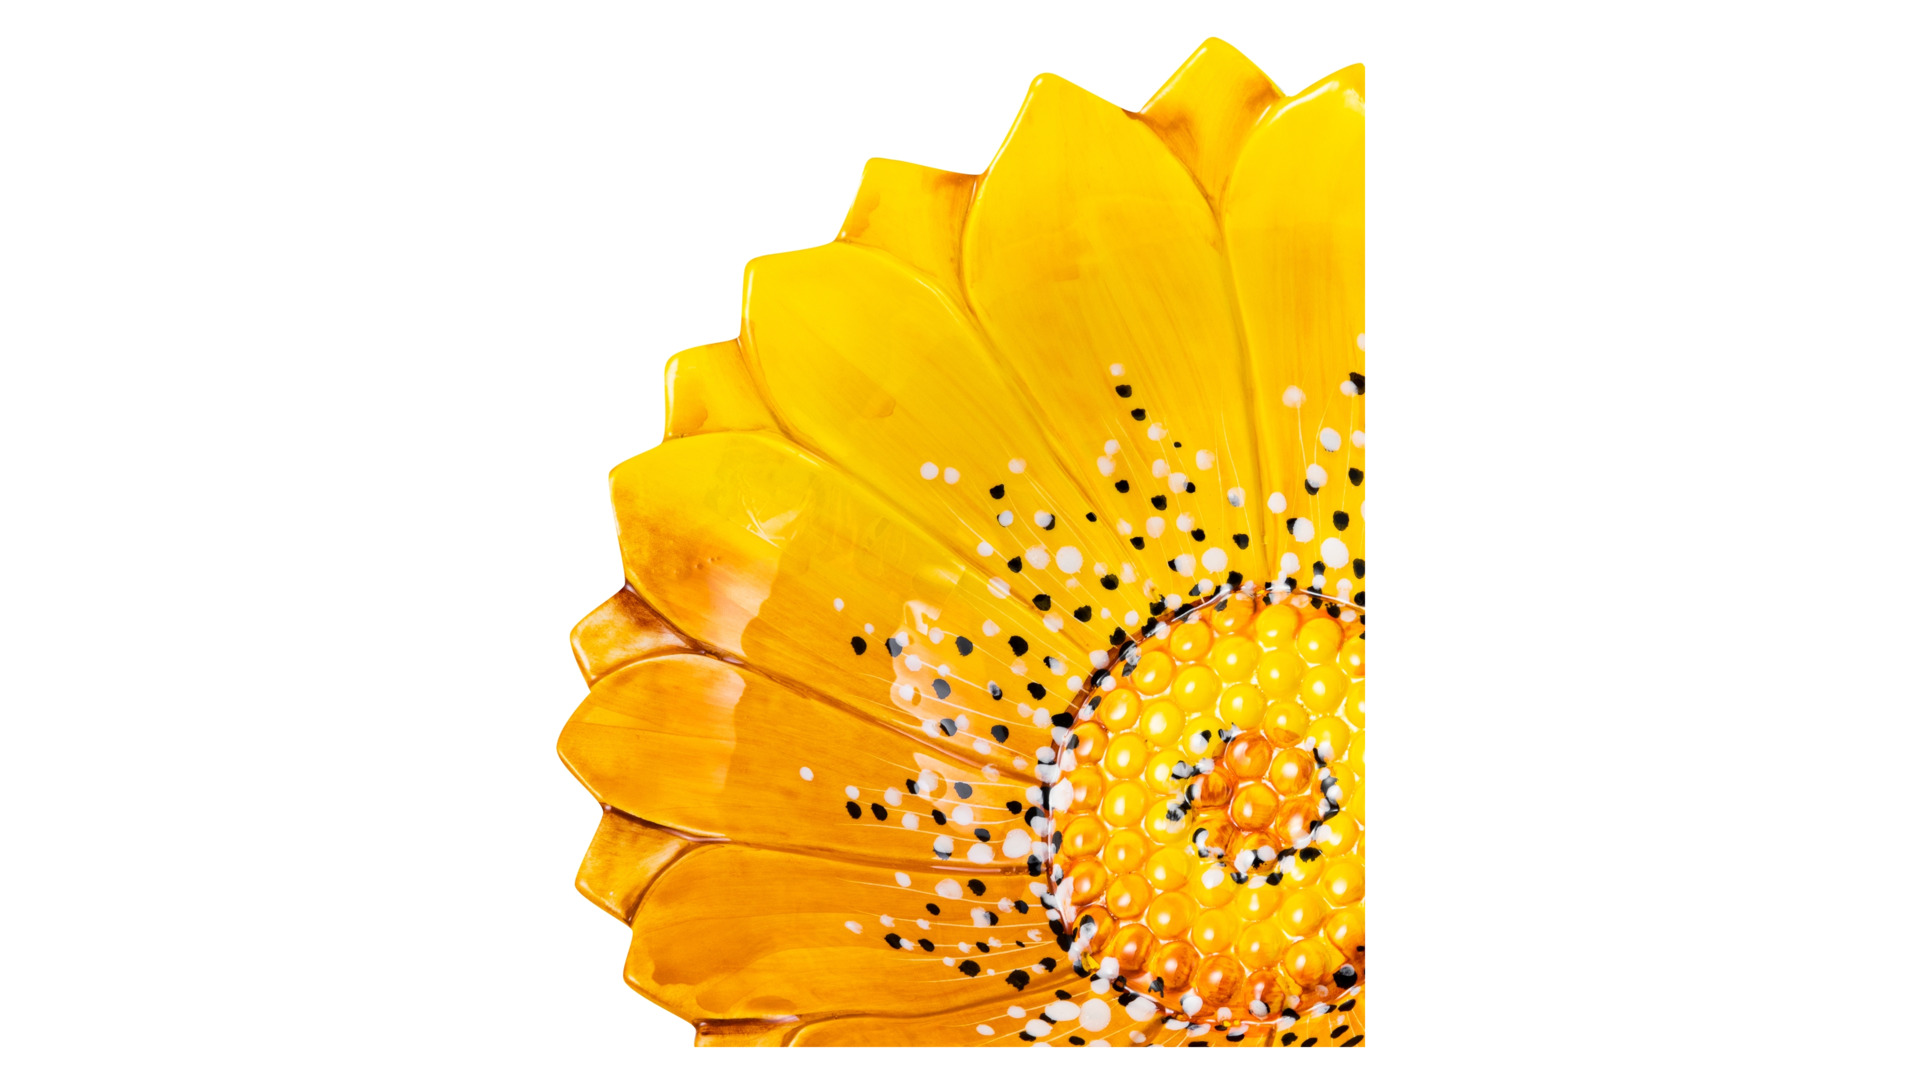 Салатник 3D Edelweiss Маргаритка 26х26х8см, керамика, желтый